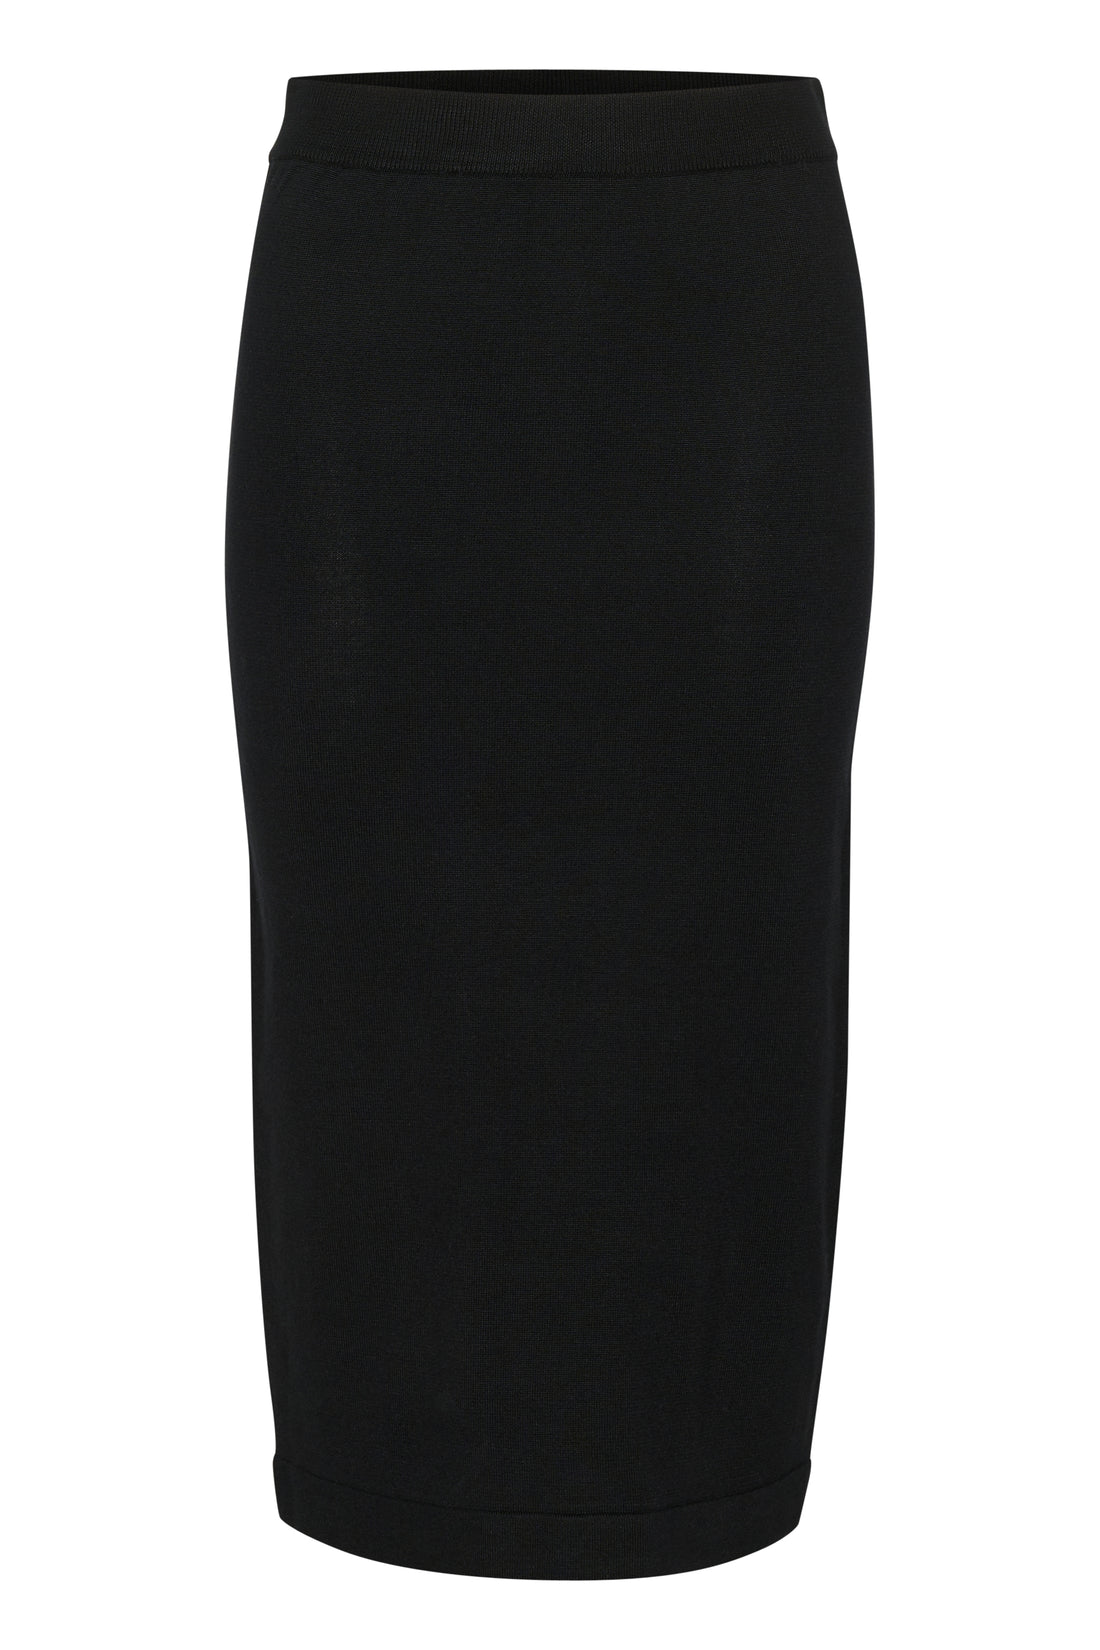 Saint Tropez Mila Knitted Skirt in Black